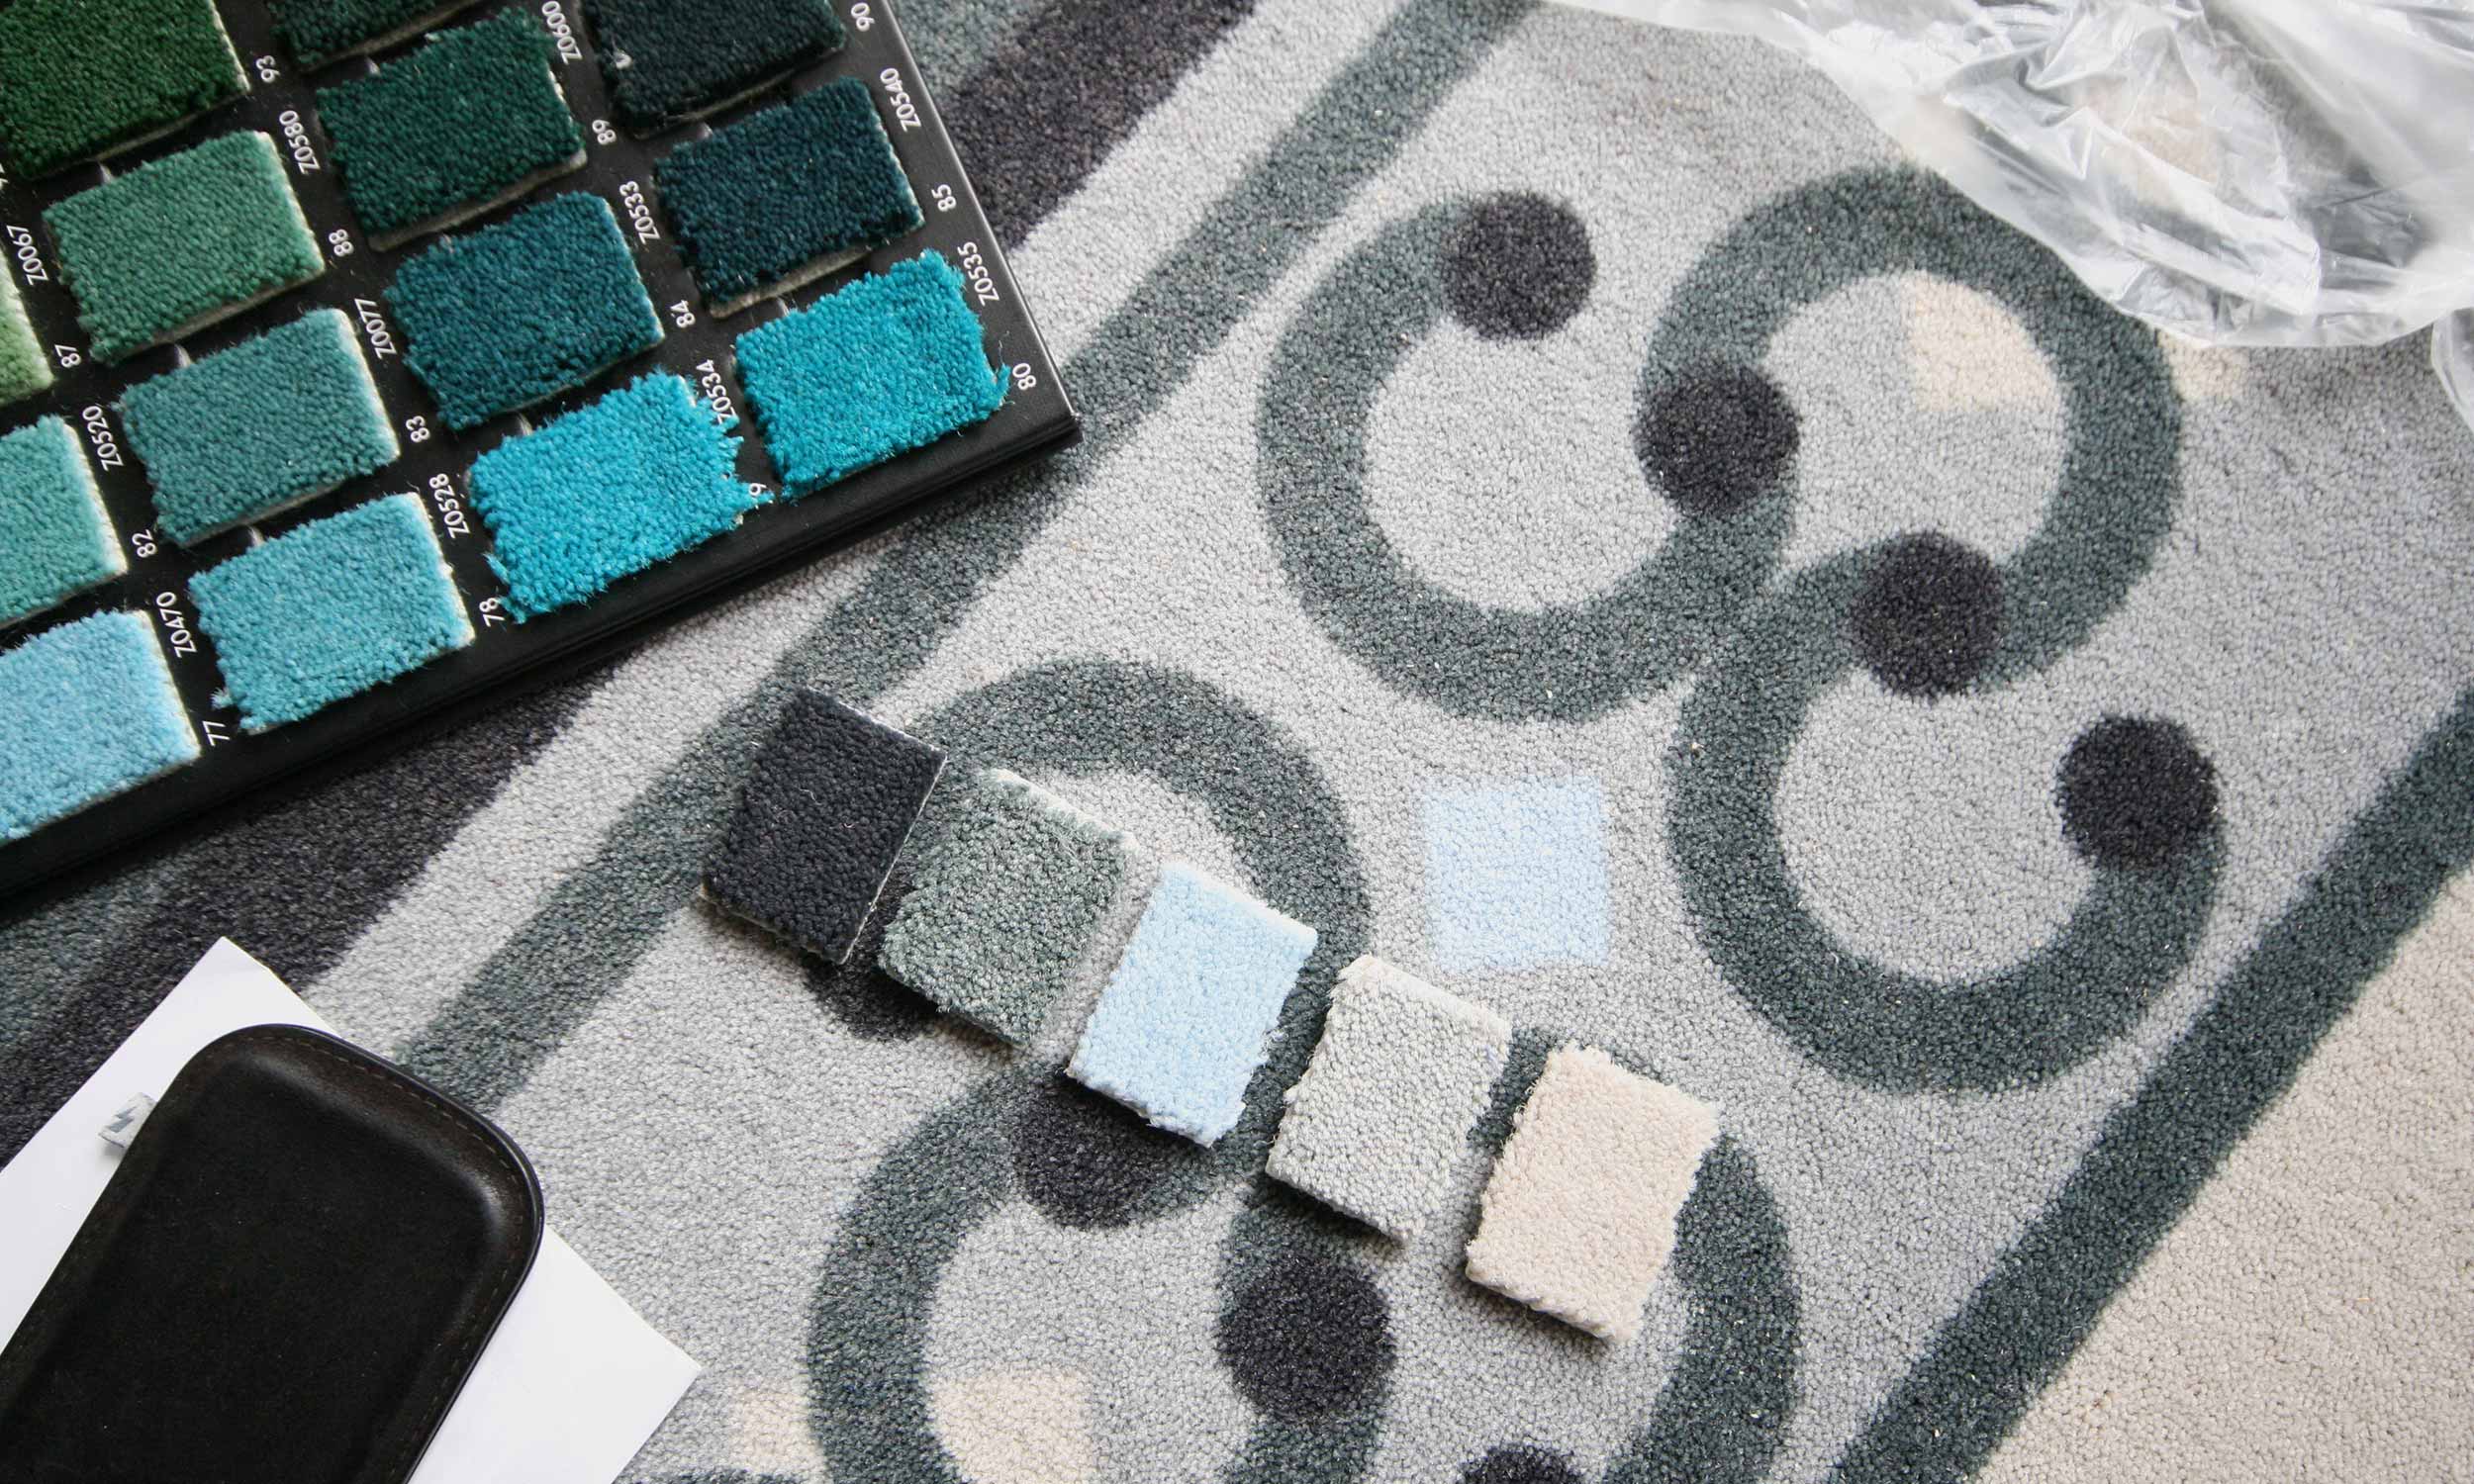 Detailfoto gewirkter Teppichelement-Muster. Die Farbabstufungen umfassen Grau-, Grün-, Blau- und Ockerabstufungen